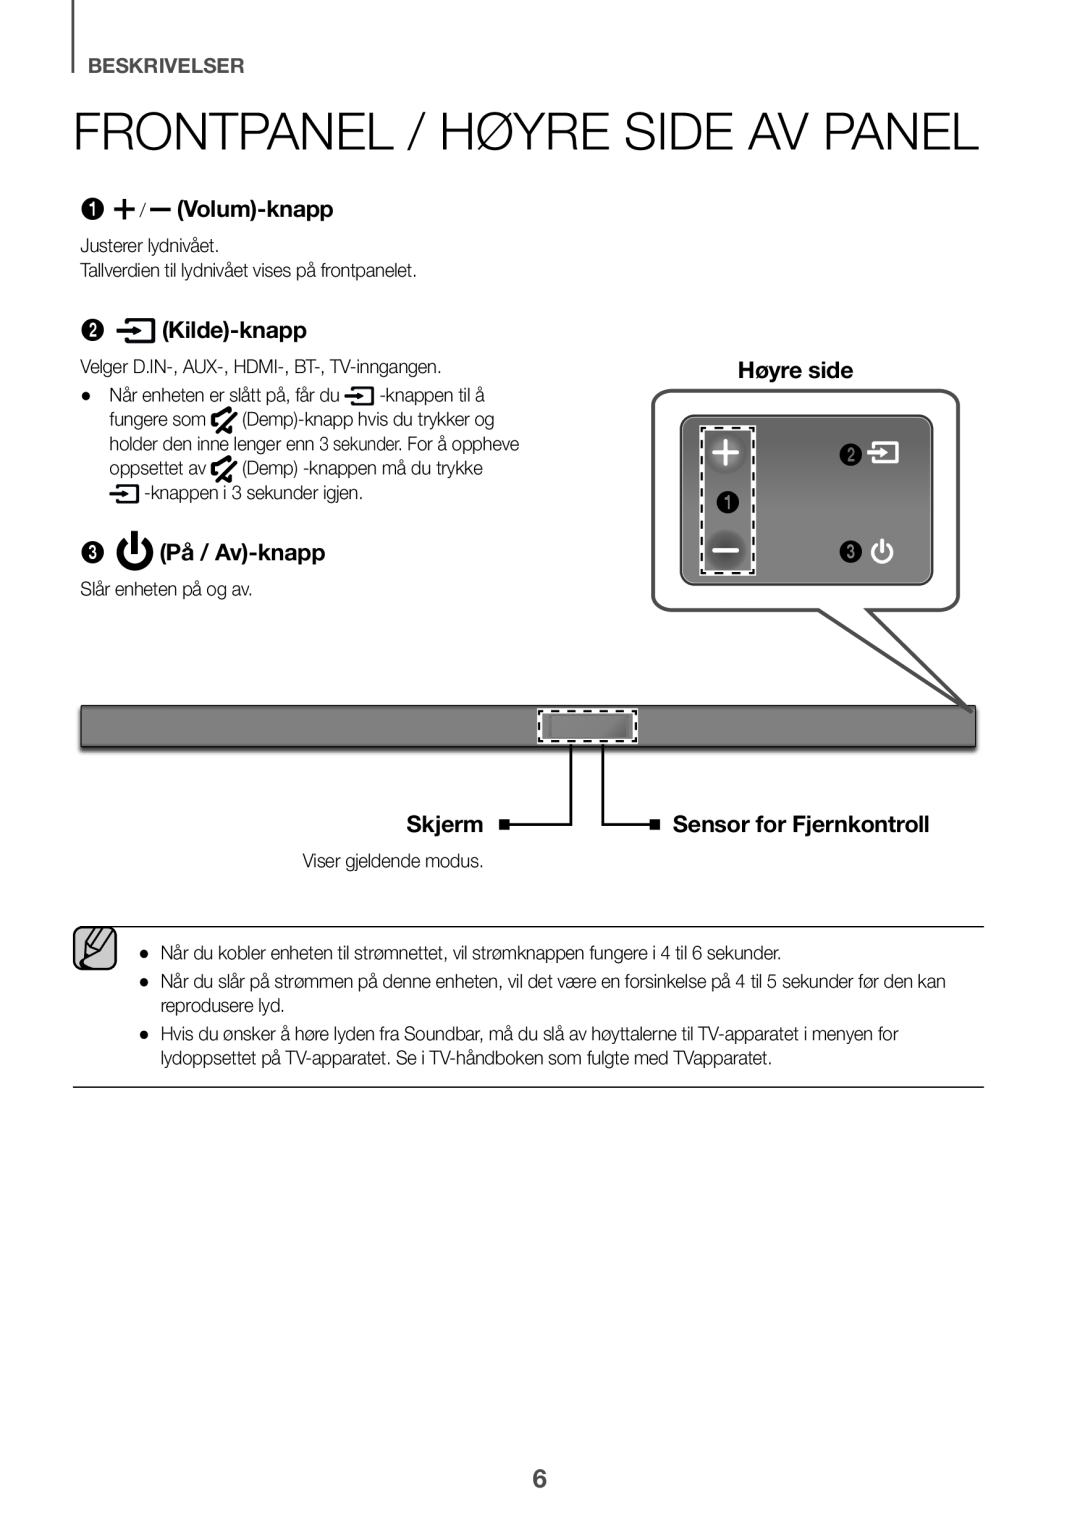 Samsung HW-K650/XN Frontpanel / Høyre side av panel, 1 / Volum-knapp, Kilde-knapp, 3 På / Av-knapp, Skjerm, beskrivelser 